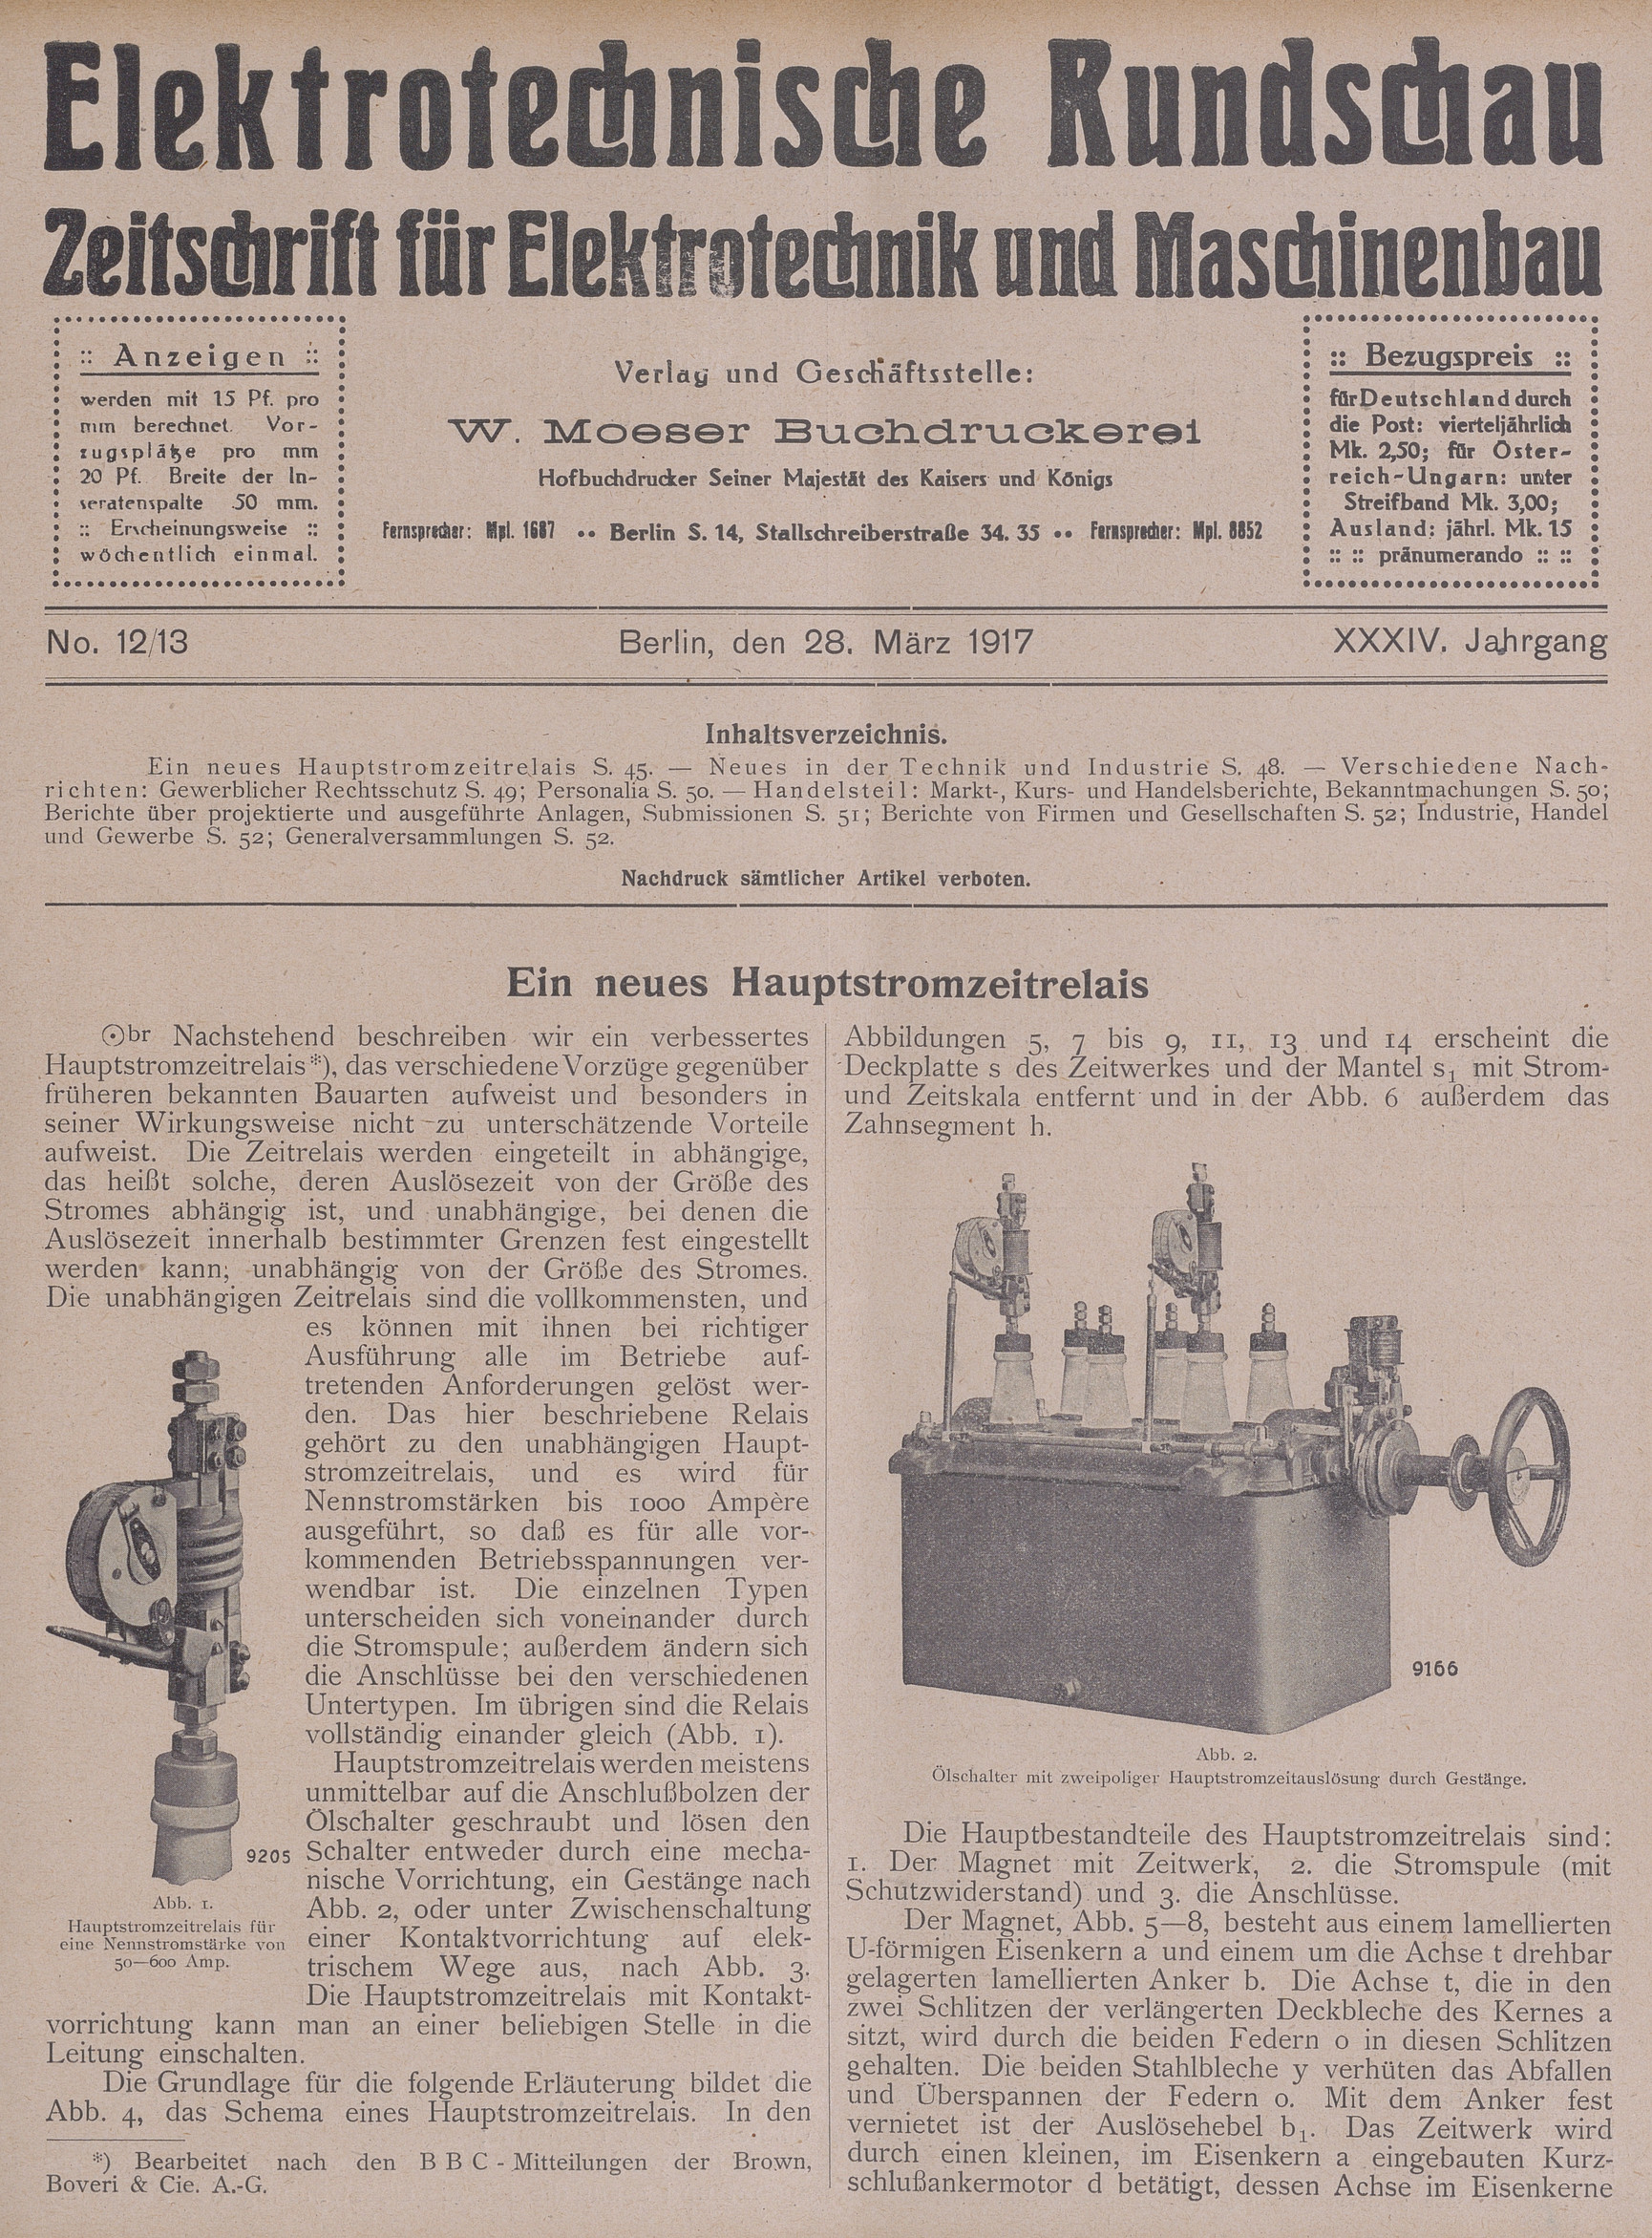 Elektrotechnische Rundschau : Zeitschrift für Elektrotechnik und Maschinenbau + Polytechnische Rundschau, No. 12/13, XXXIV. Jahrgang